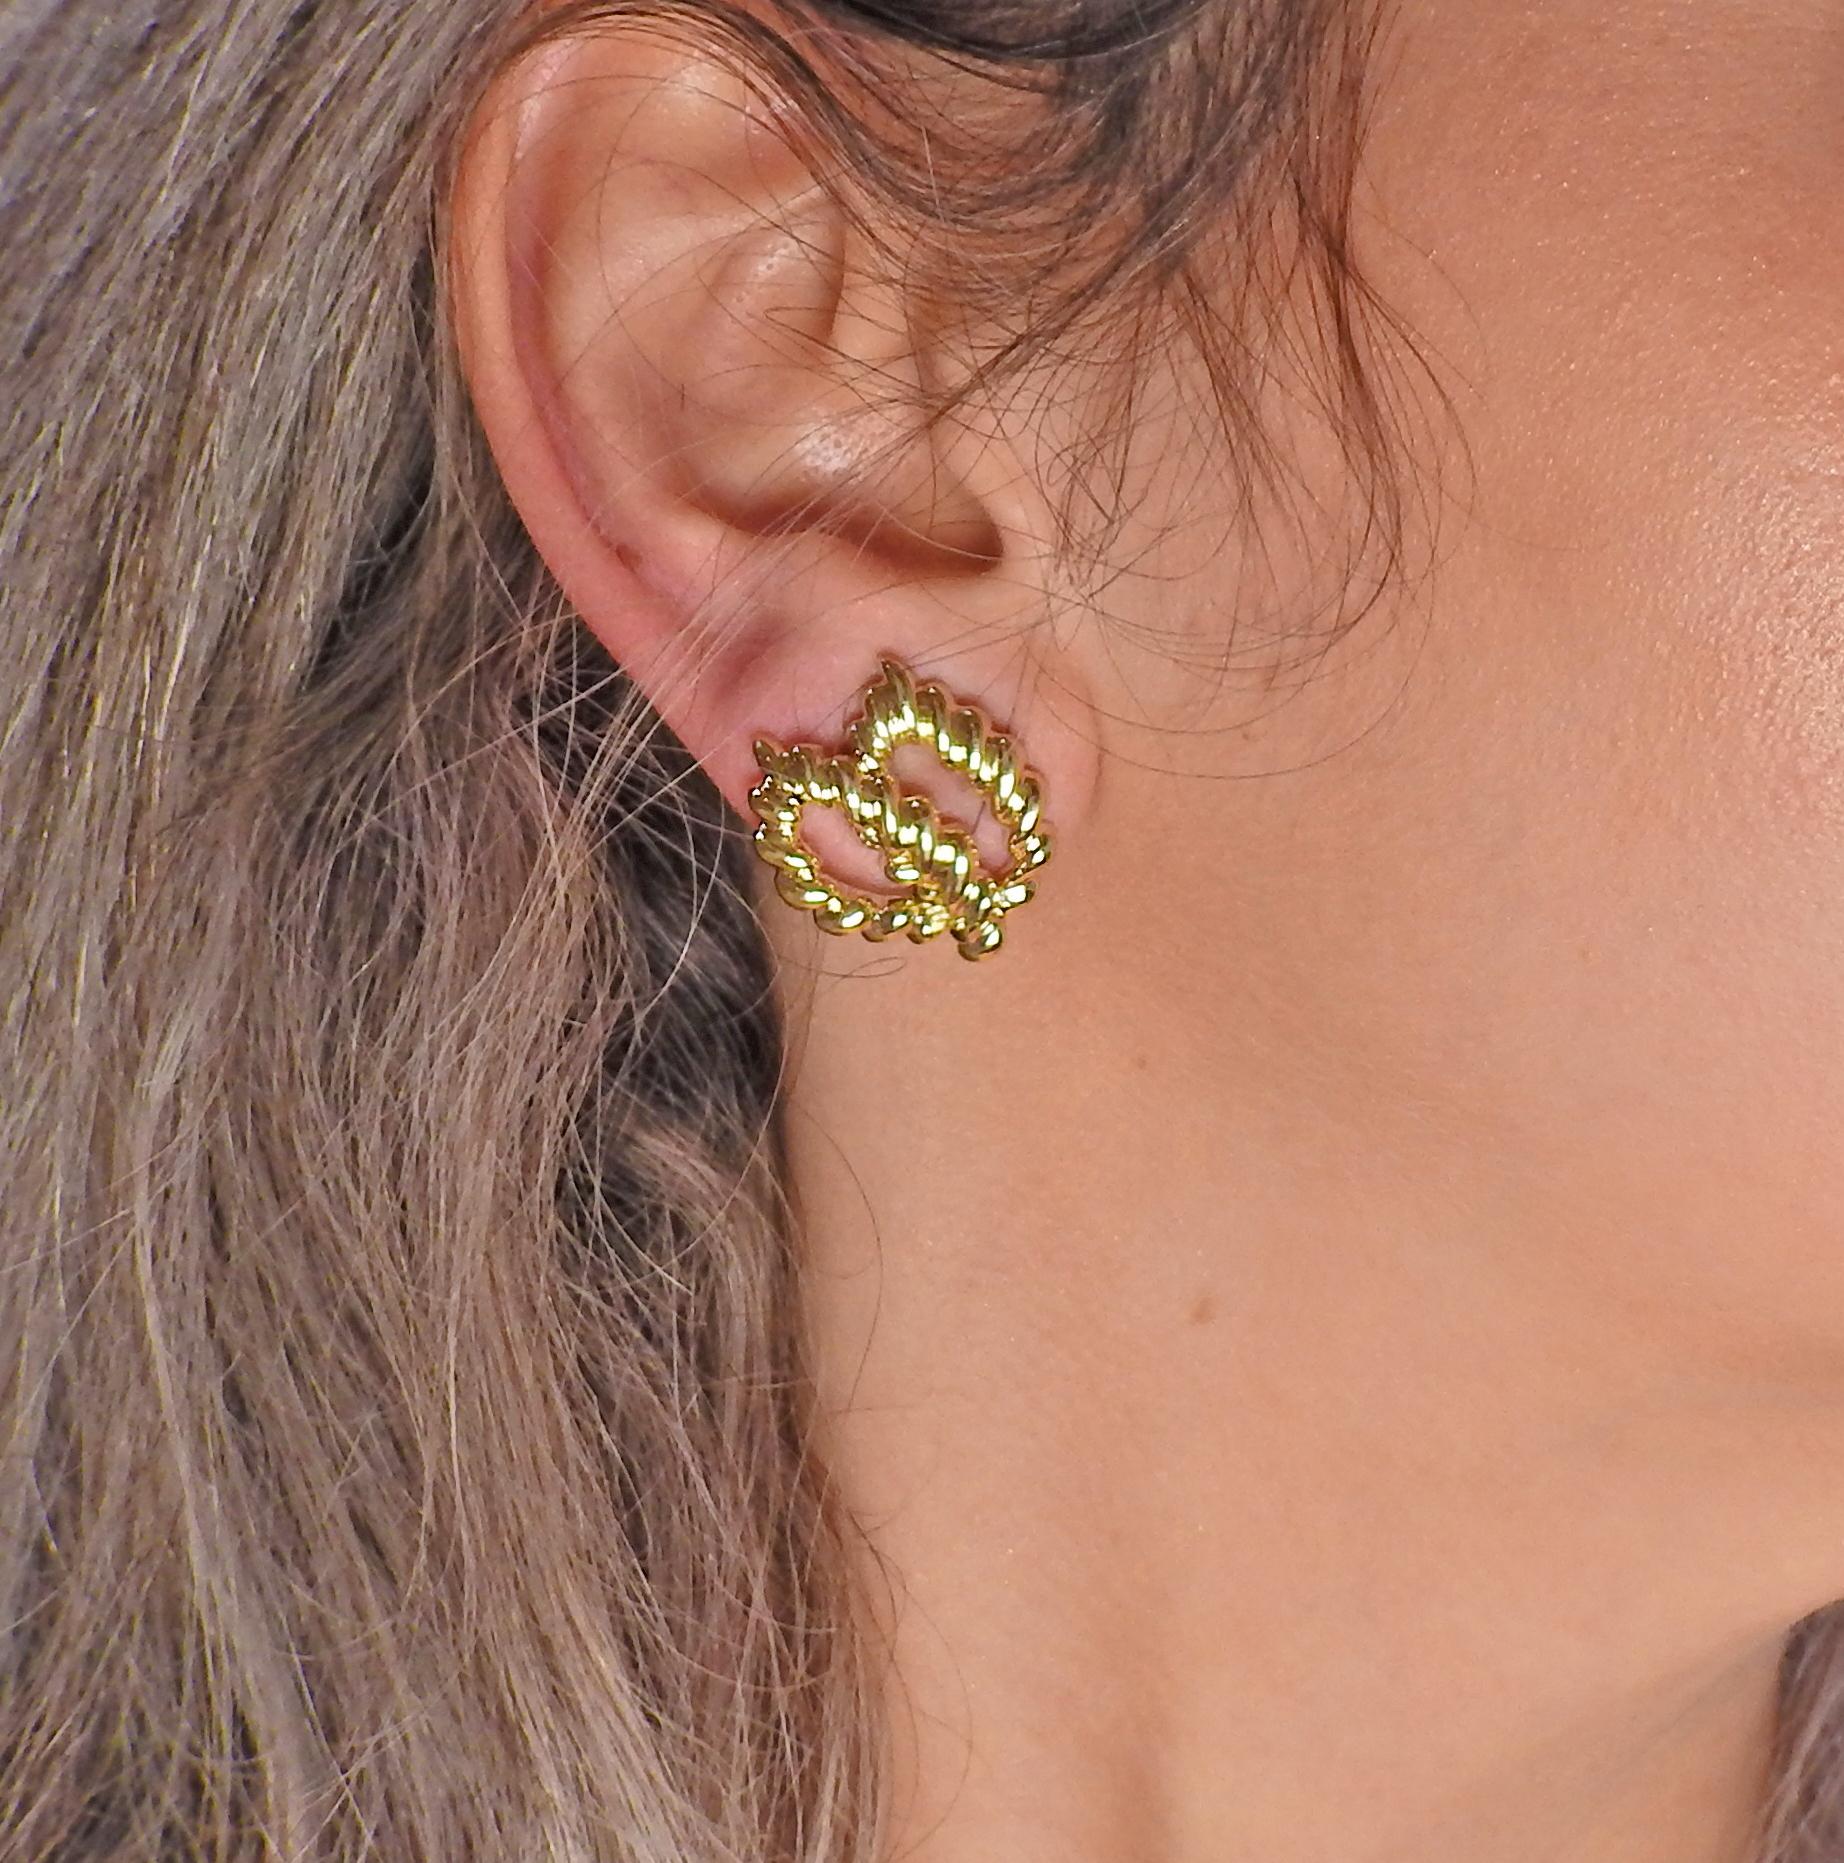 Tiffany & Co. 18 Karat Gold Earrings 1